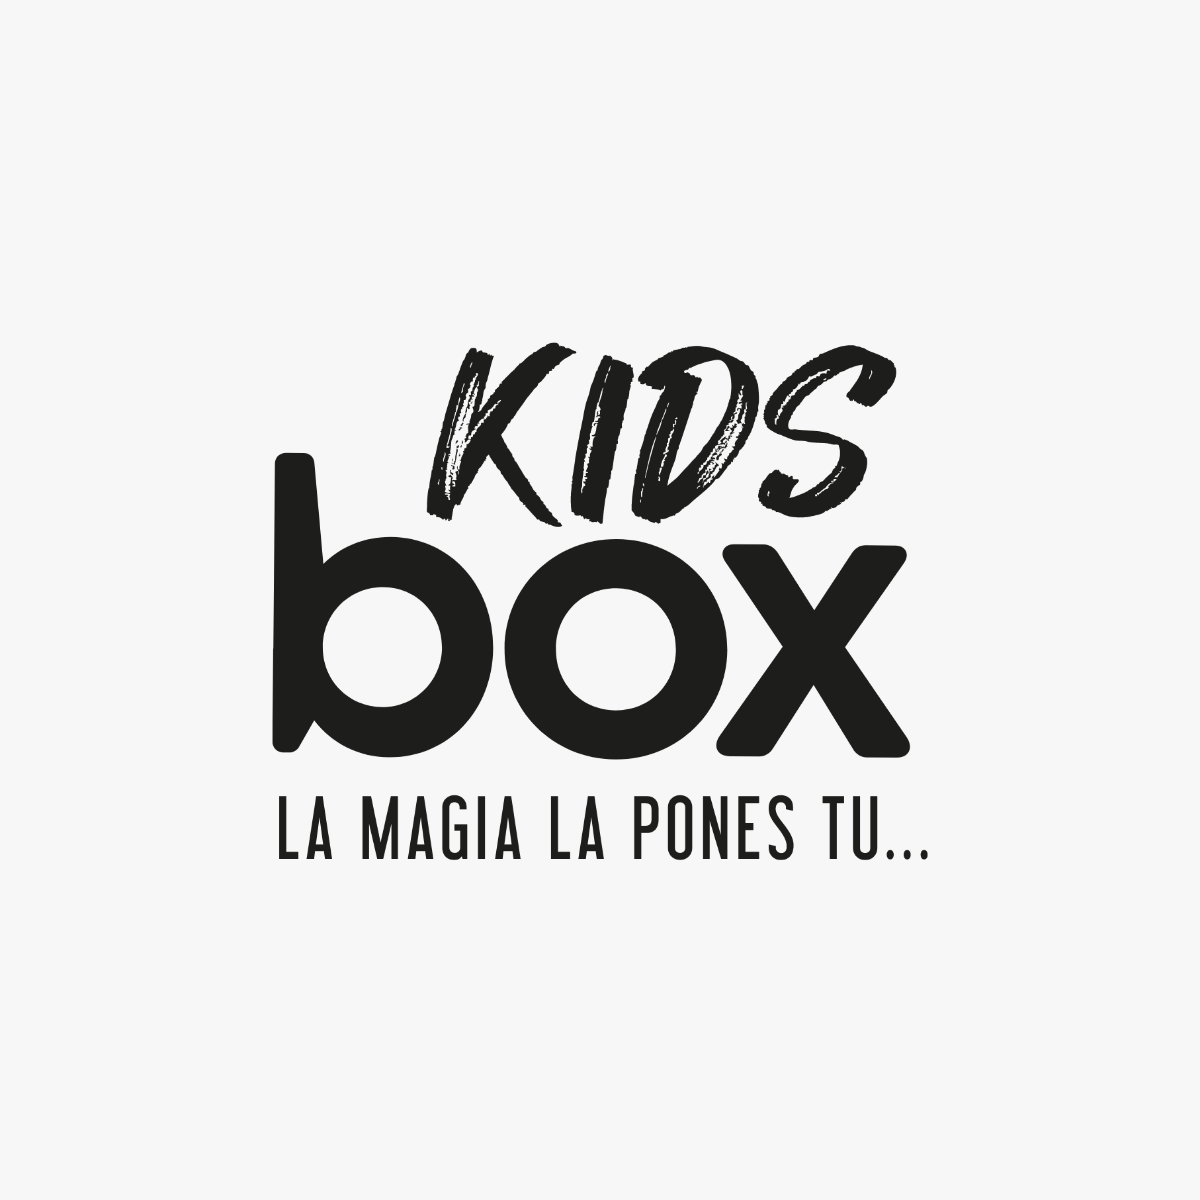 KidsBox Chile